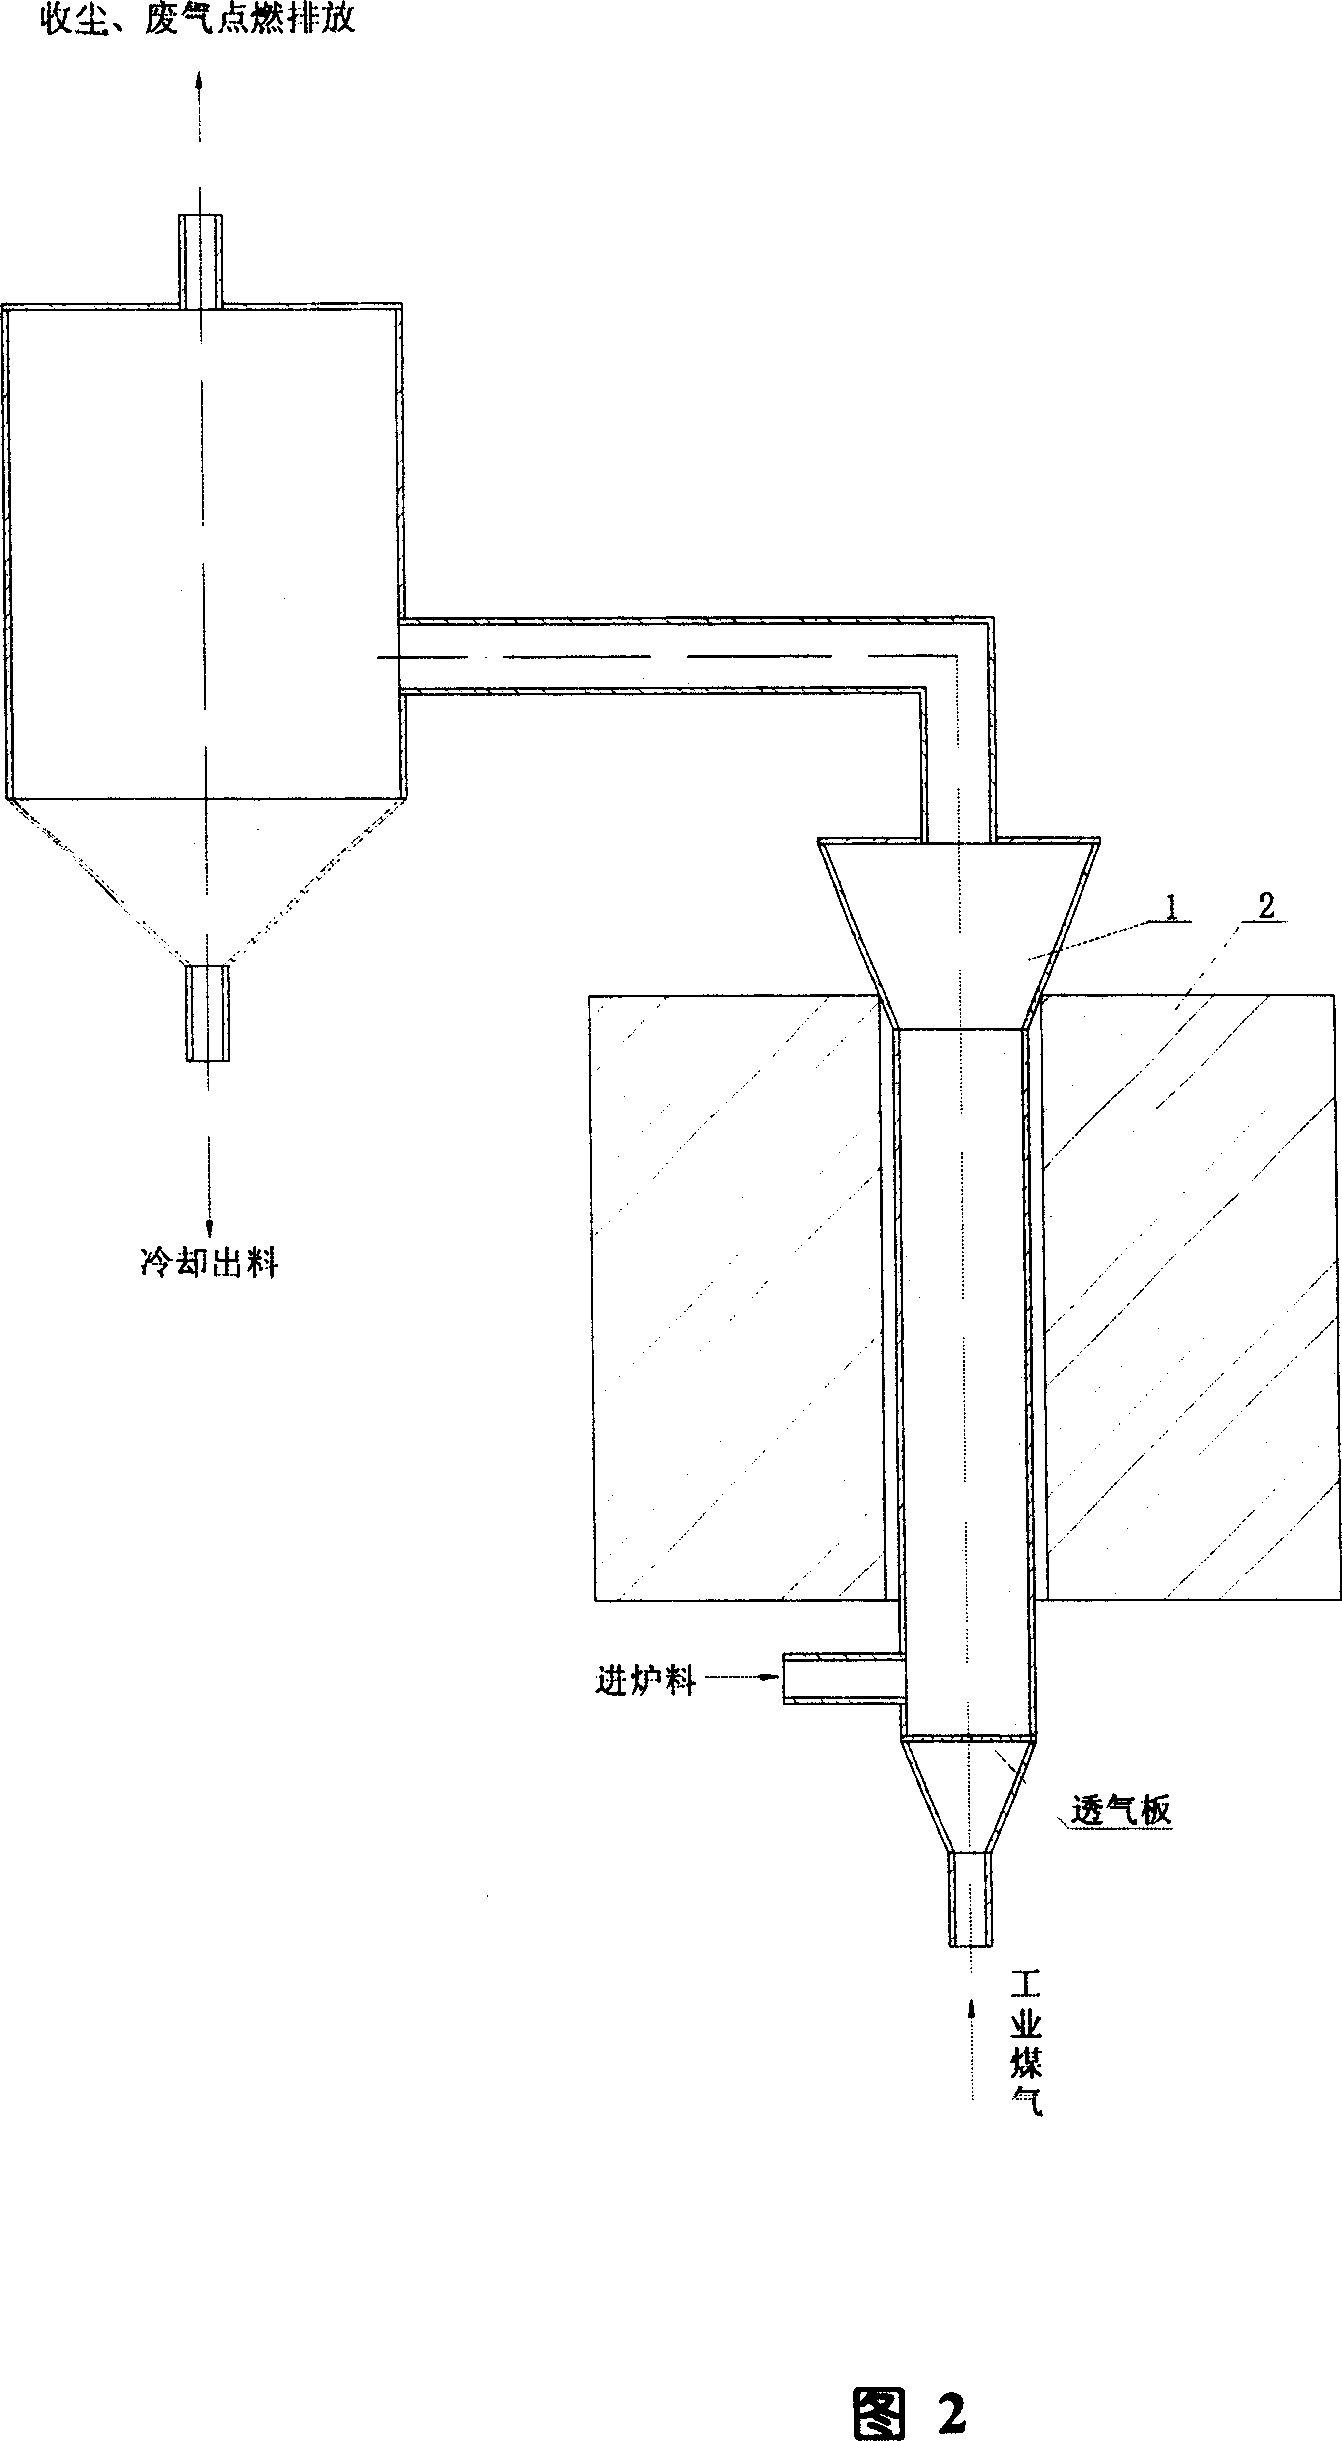 Method for producing vanadium trioxide